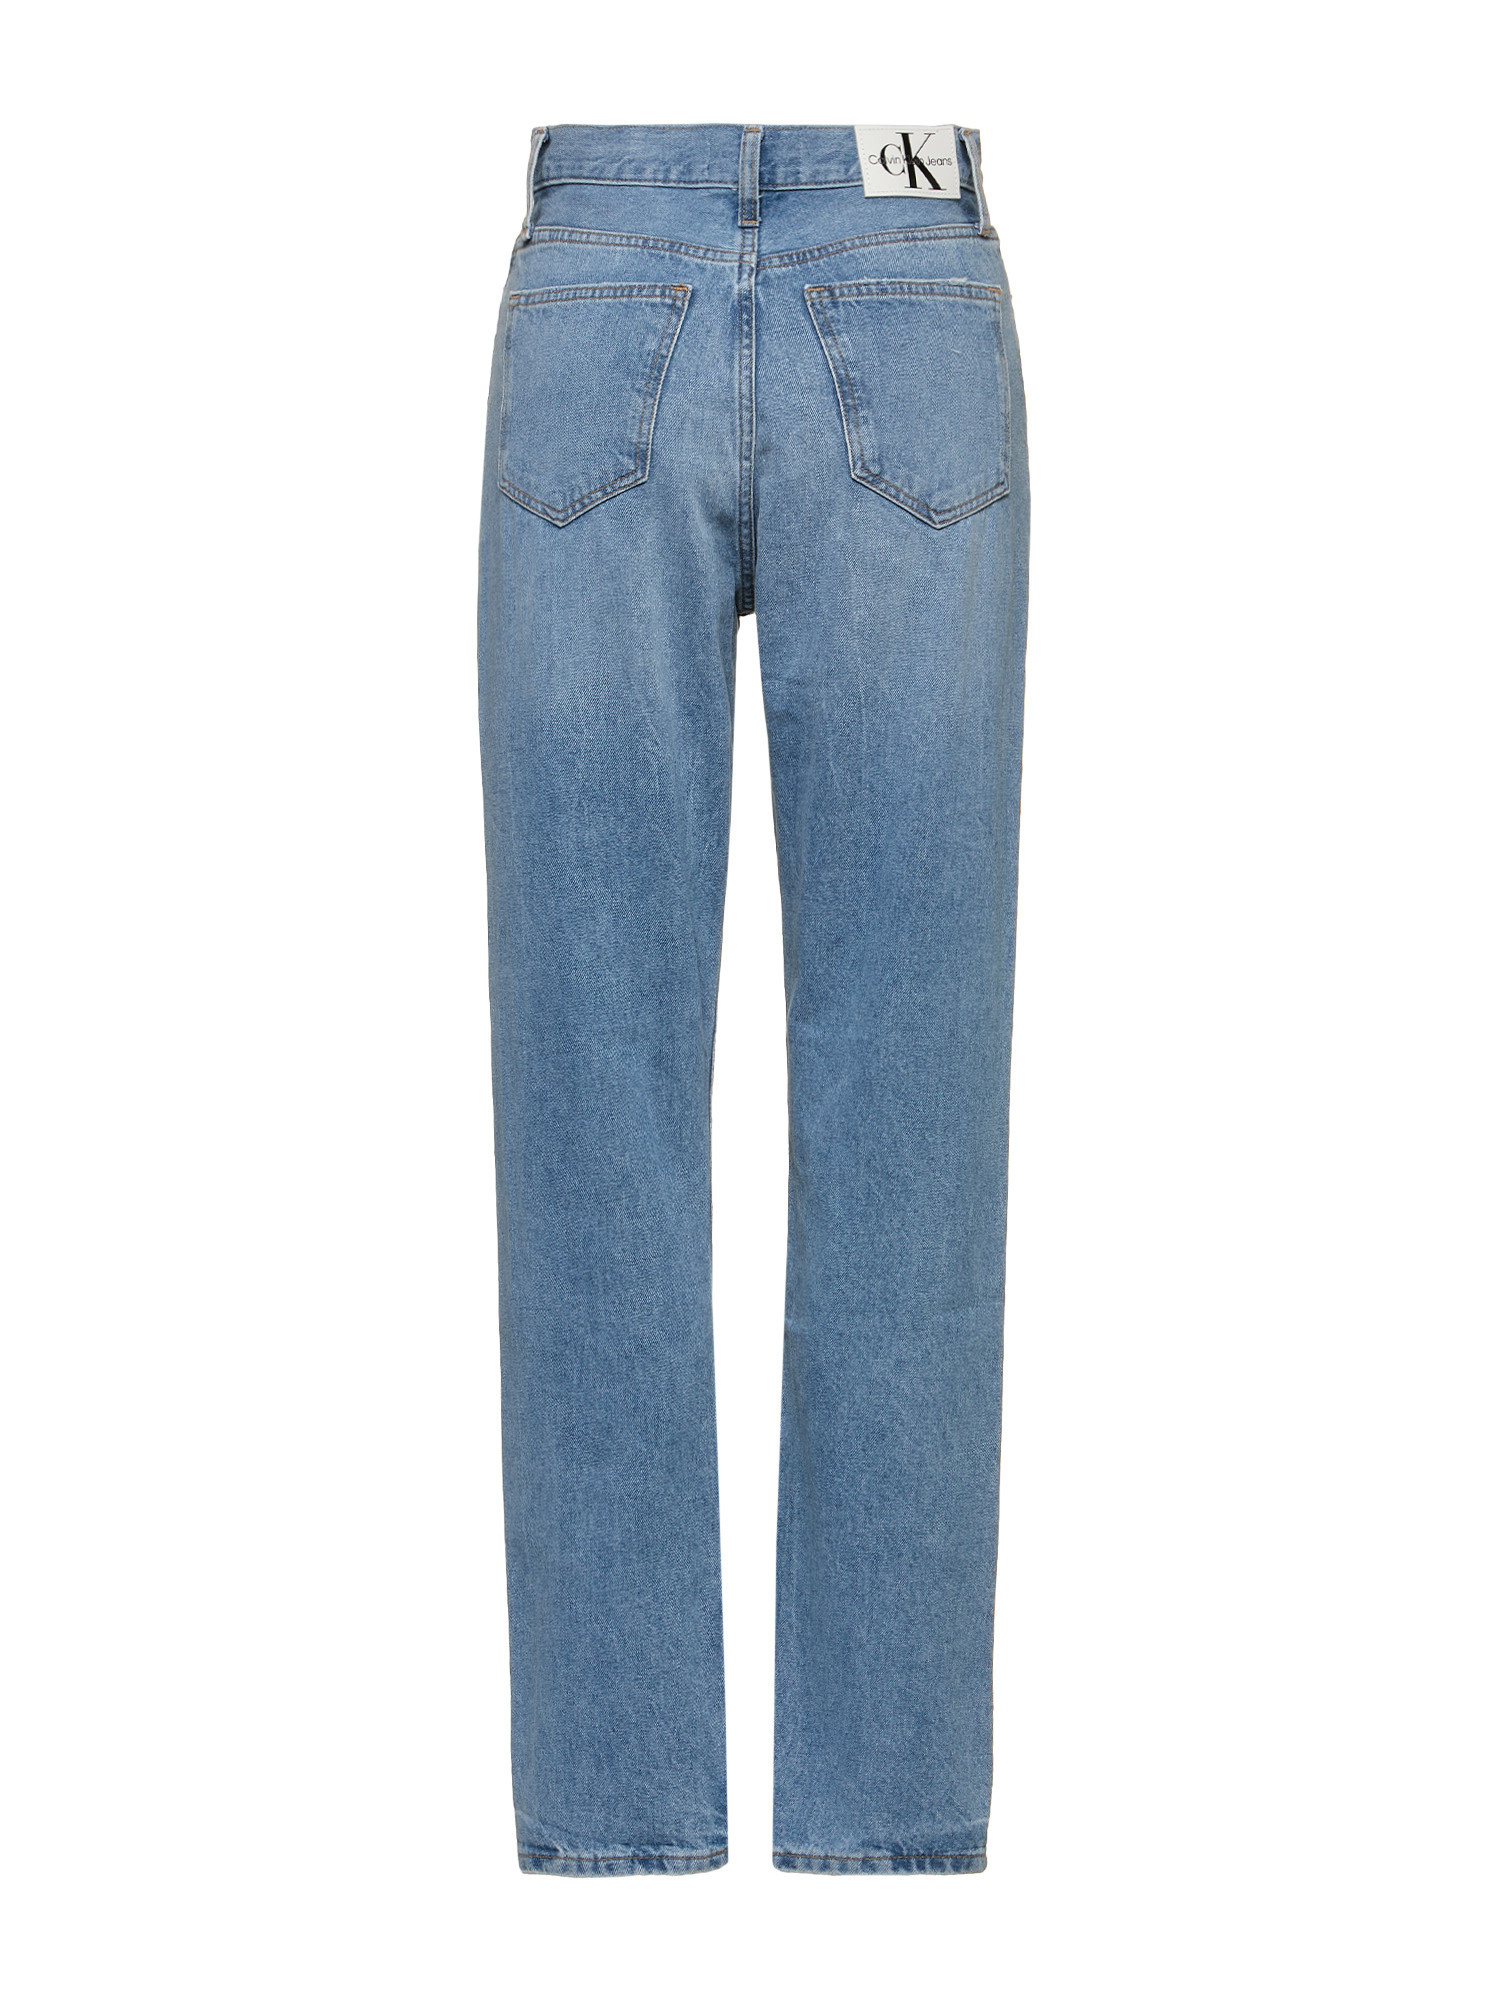 Calvin Klein Jeans -Slim fit five pocket jeans, Denim, large image number 1